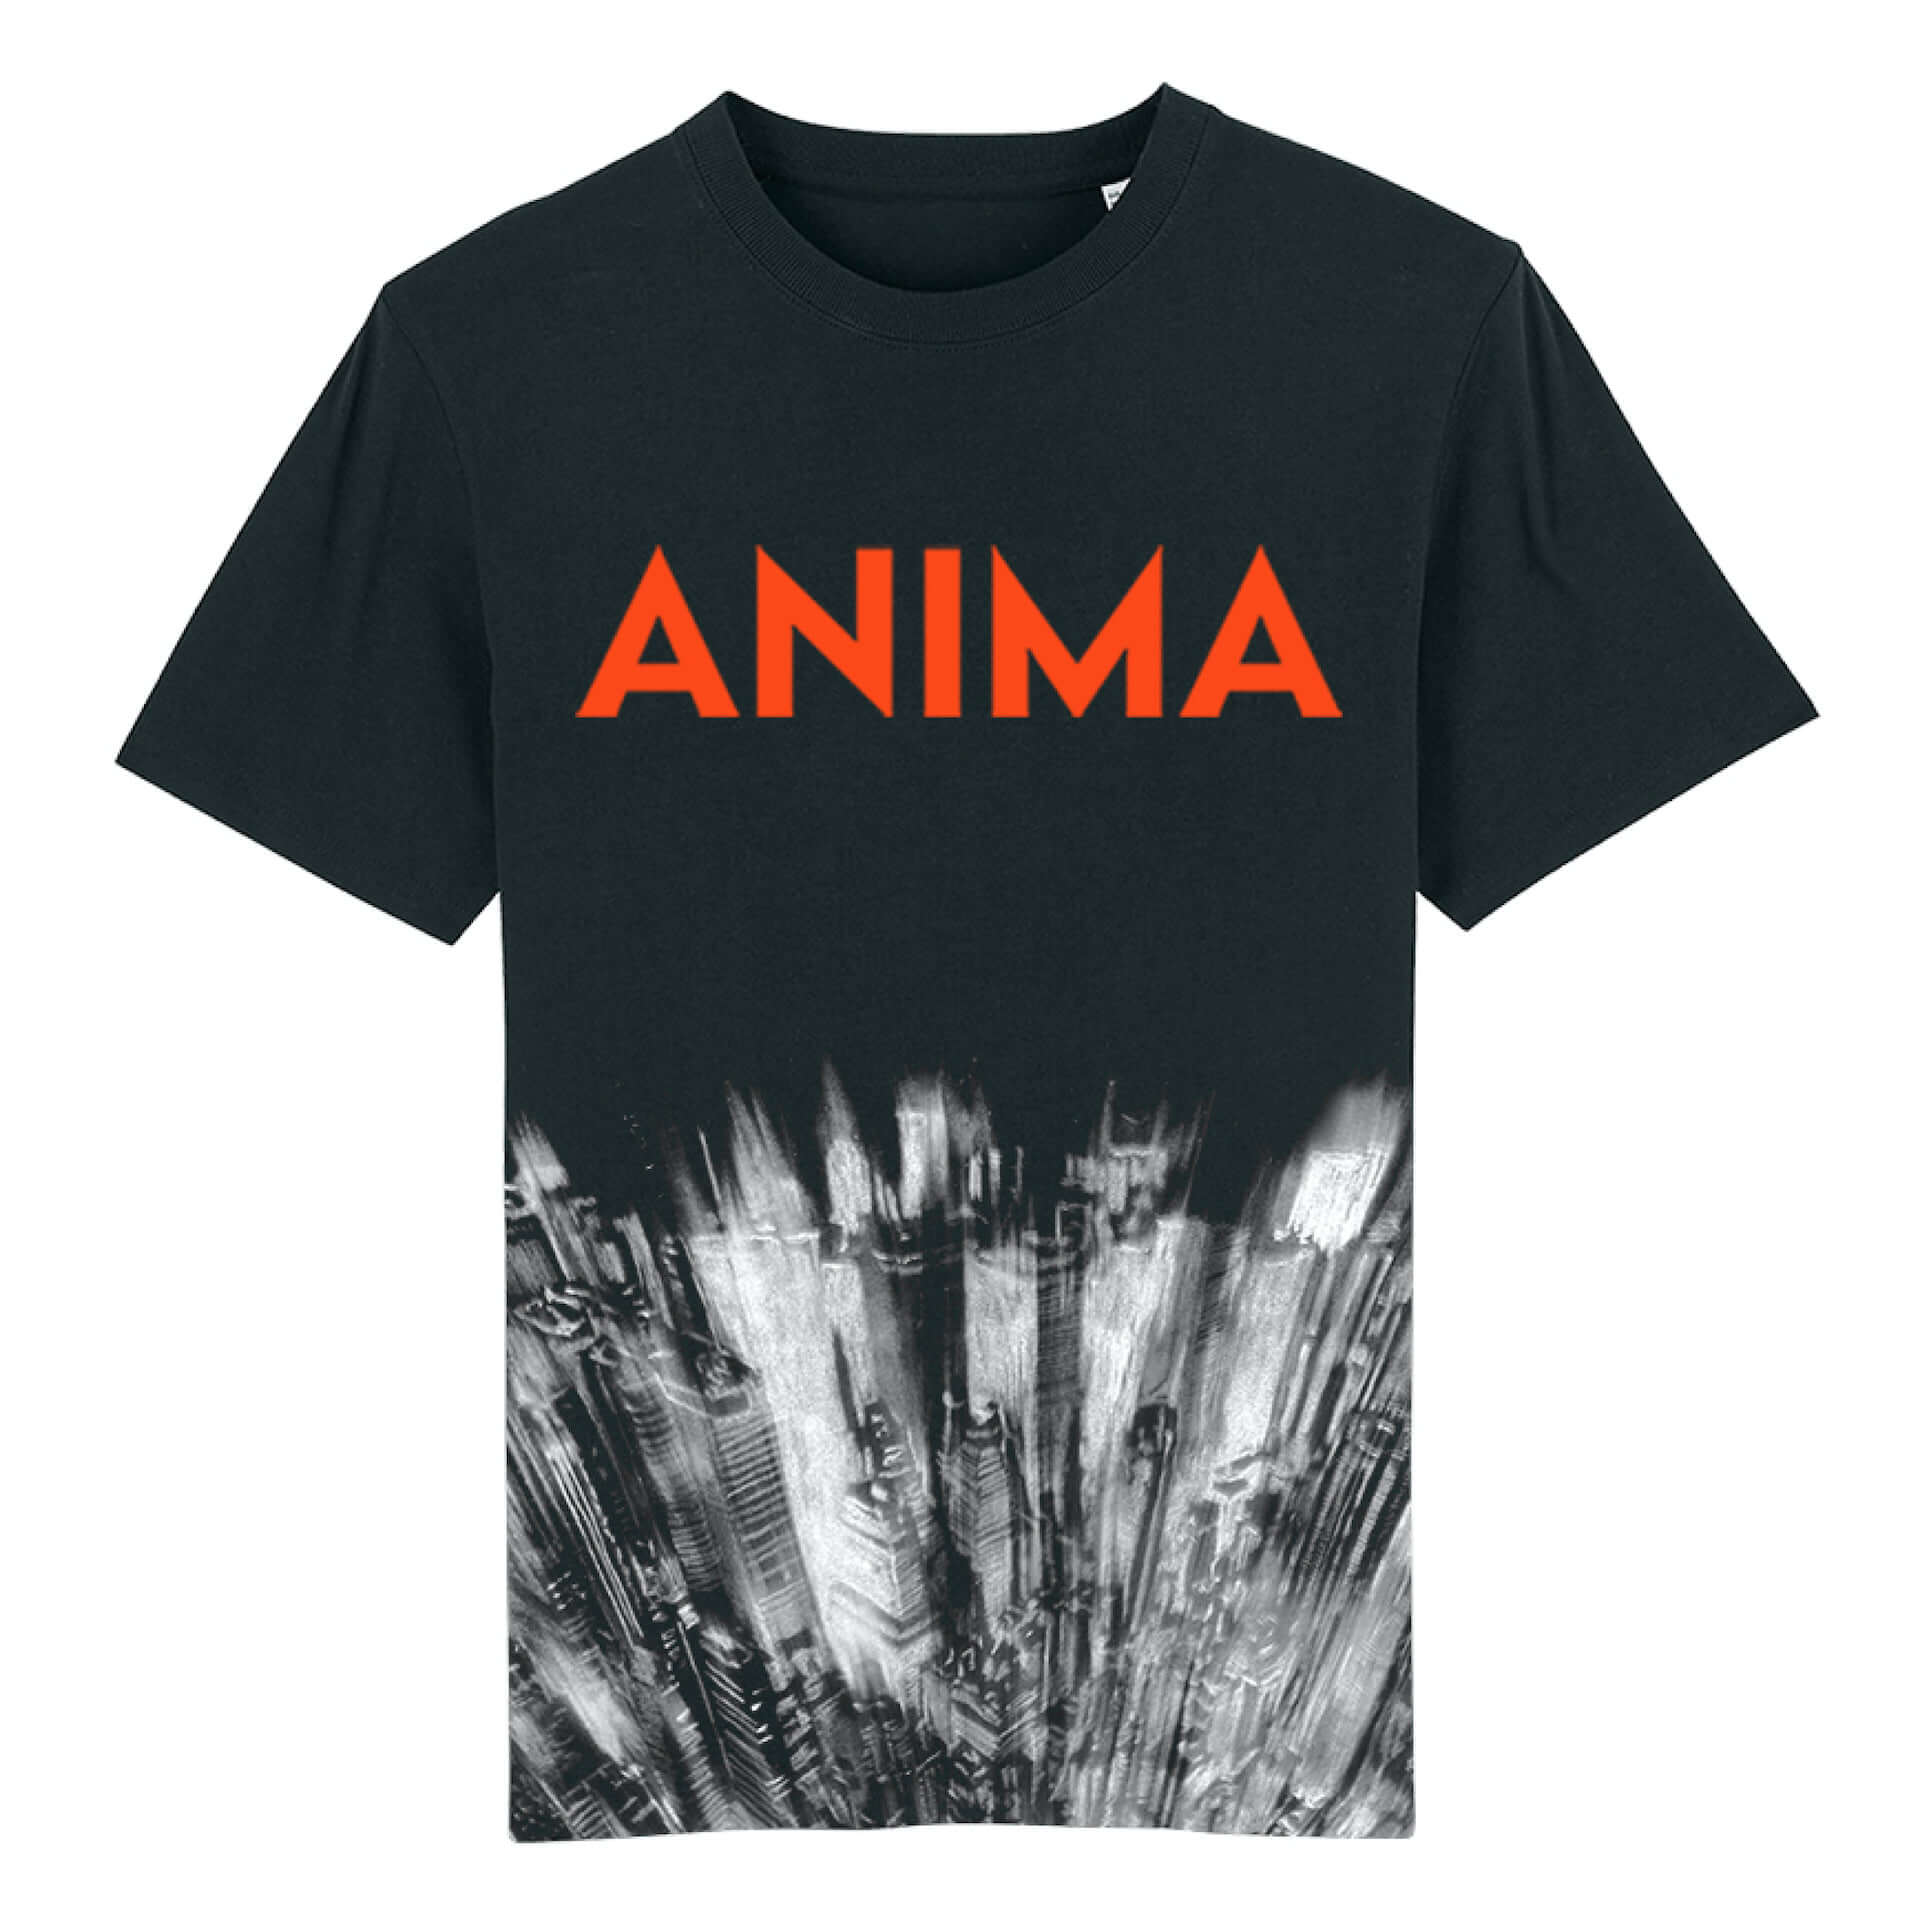 Radioheadが2000年にダブリンで実施したライブ映像を公開！Thom Yorke『ANIMA』Tシャツの単体販売も開始 music200410_radiohead_5-1920x1921